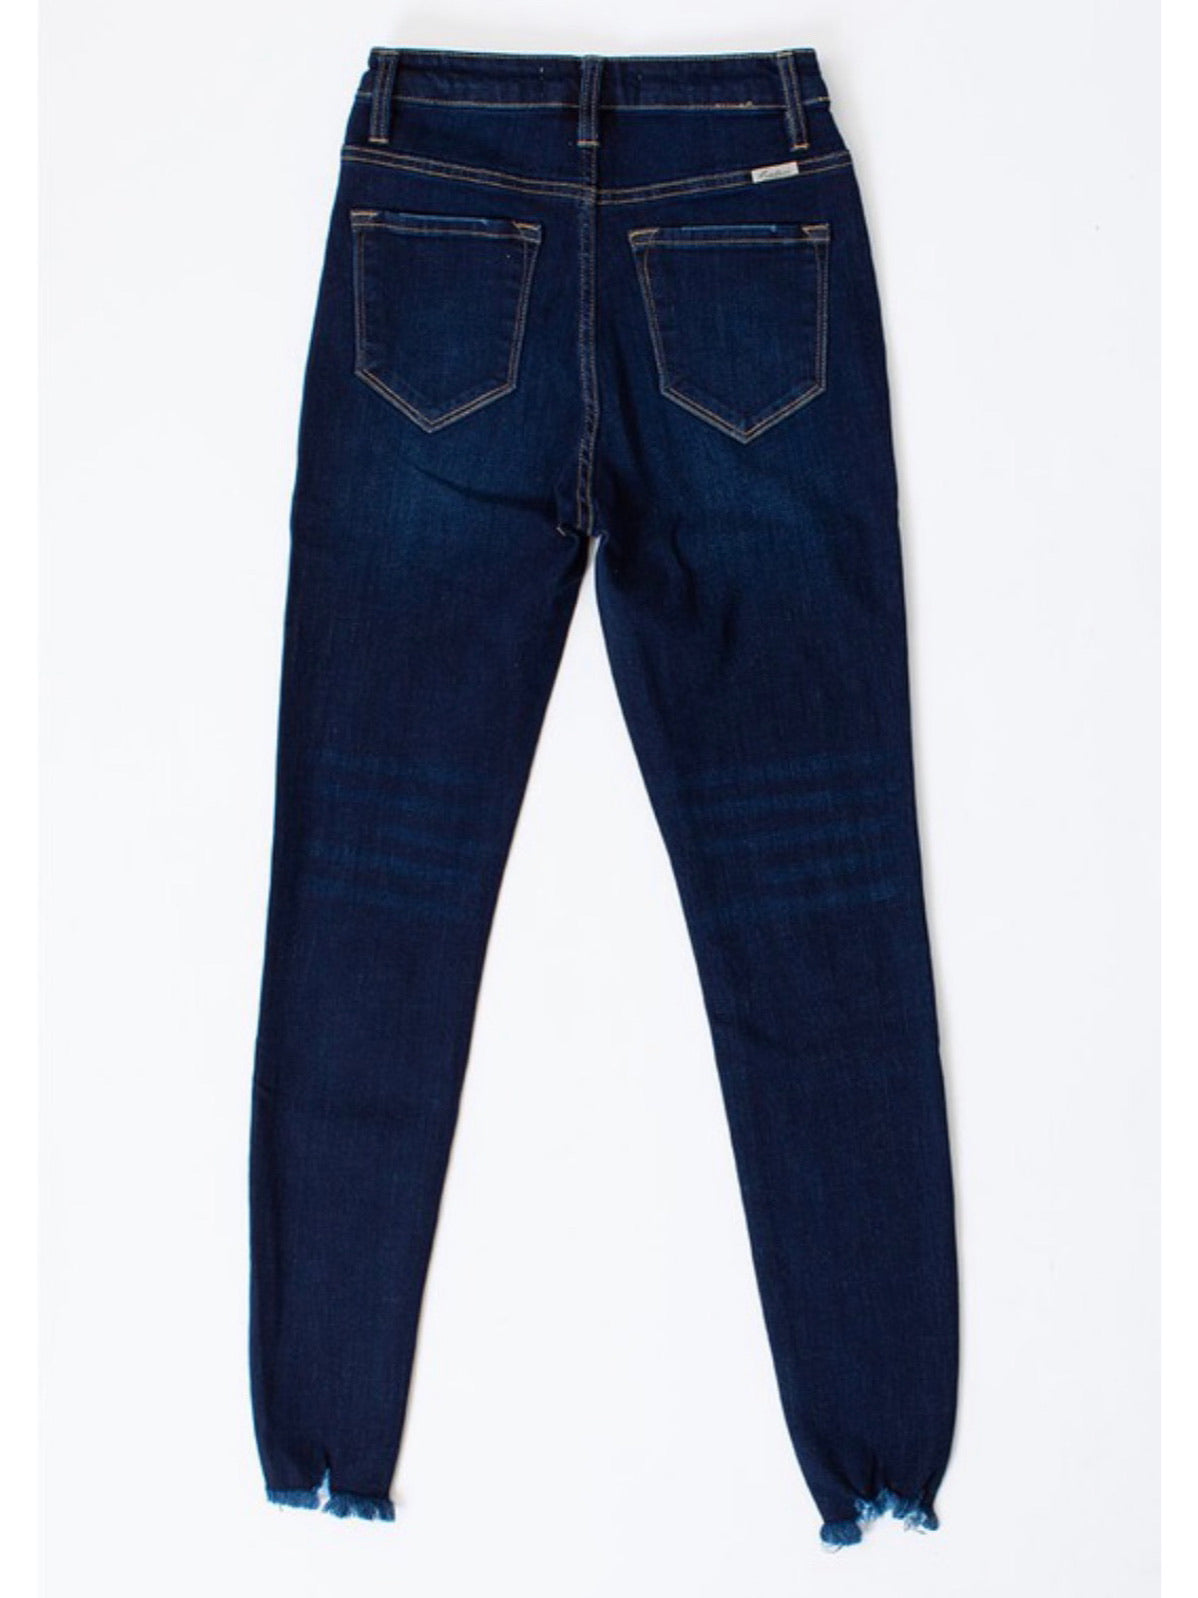 Dark High Rise Skinny KanCan Jeans